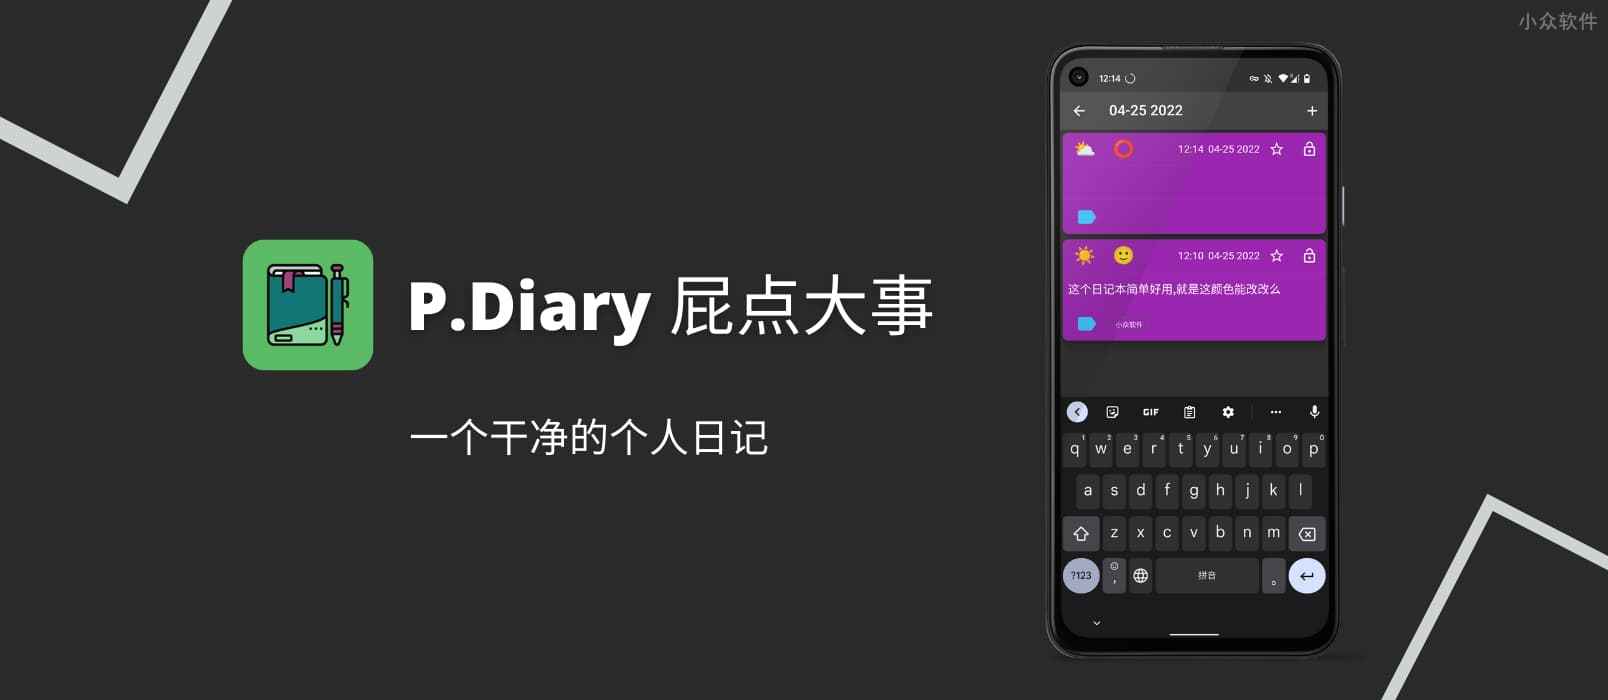 P.Diary - 屁点大事，一个干净的个人日记[Android]